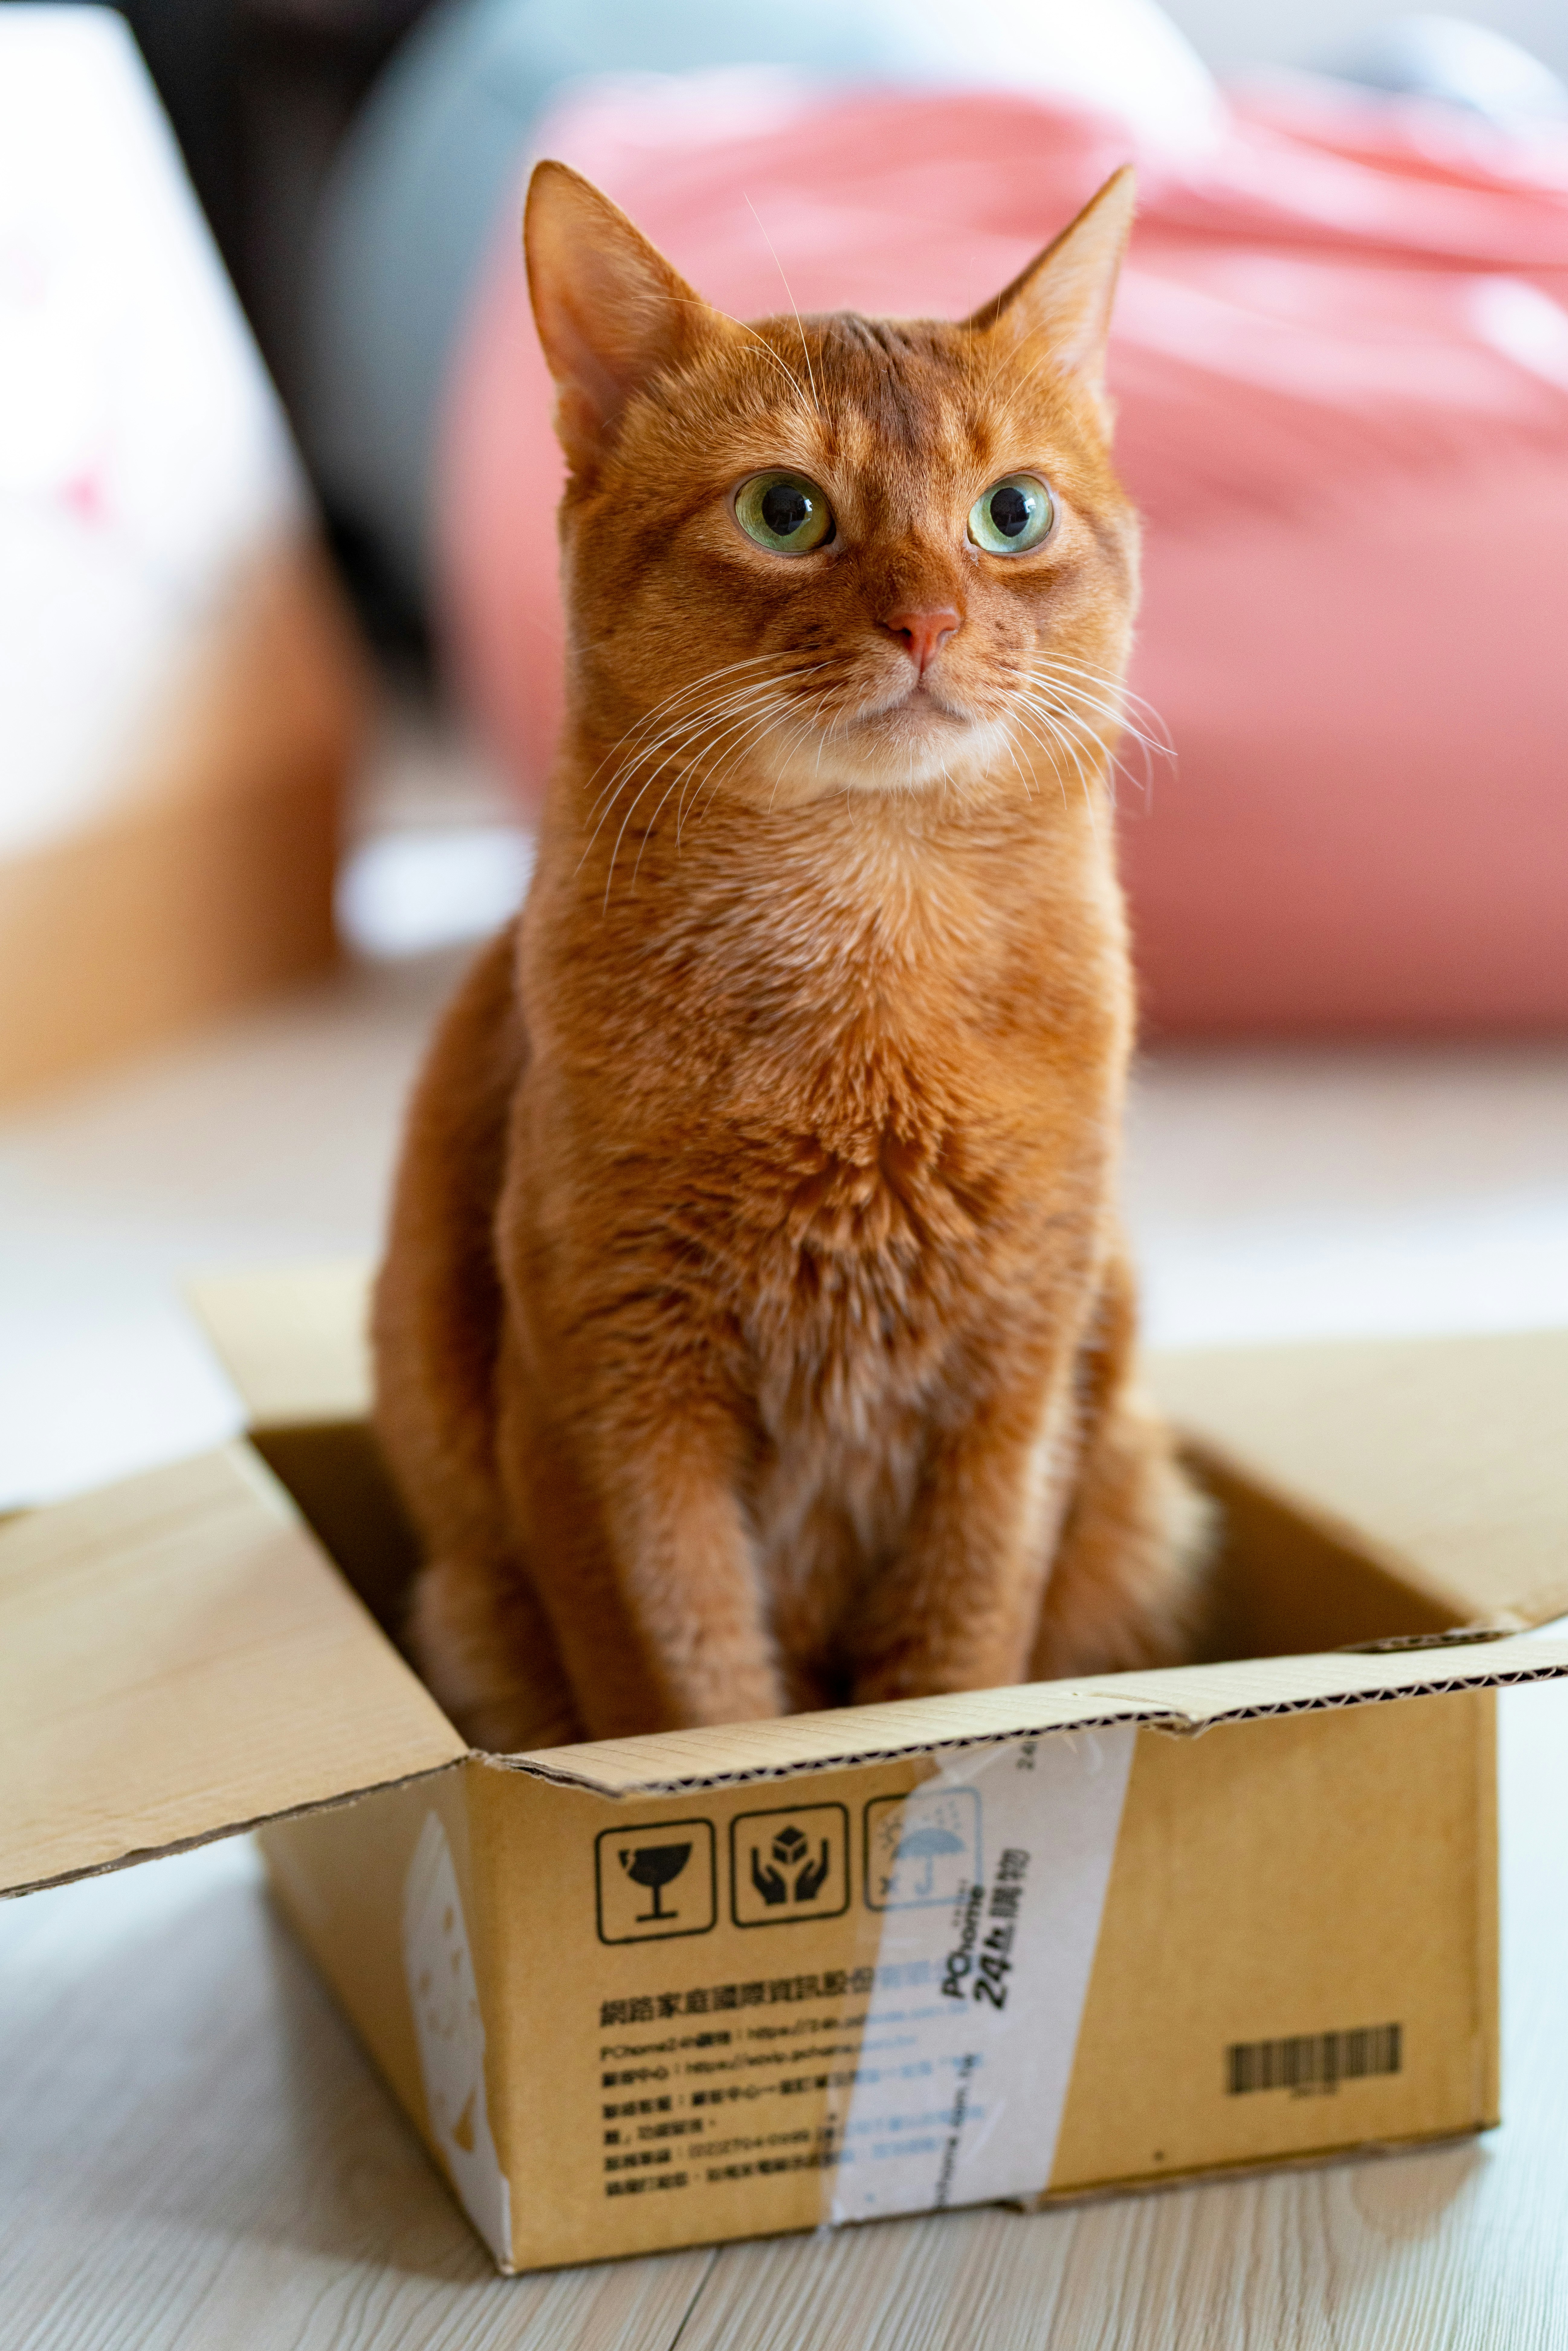 A cat sitting in a cardboard box